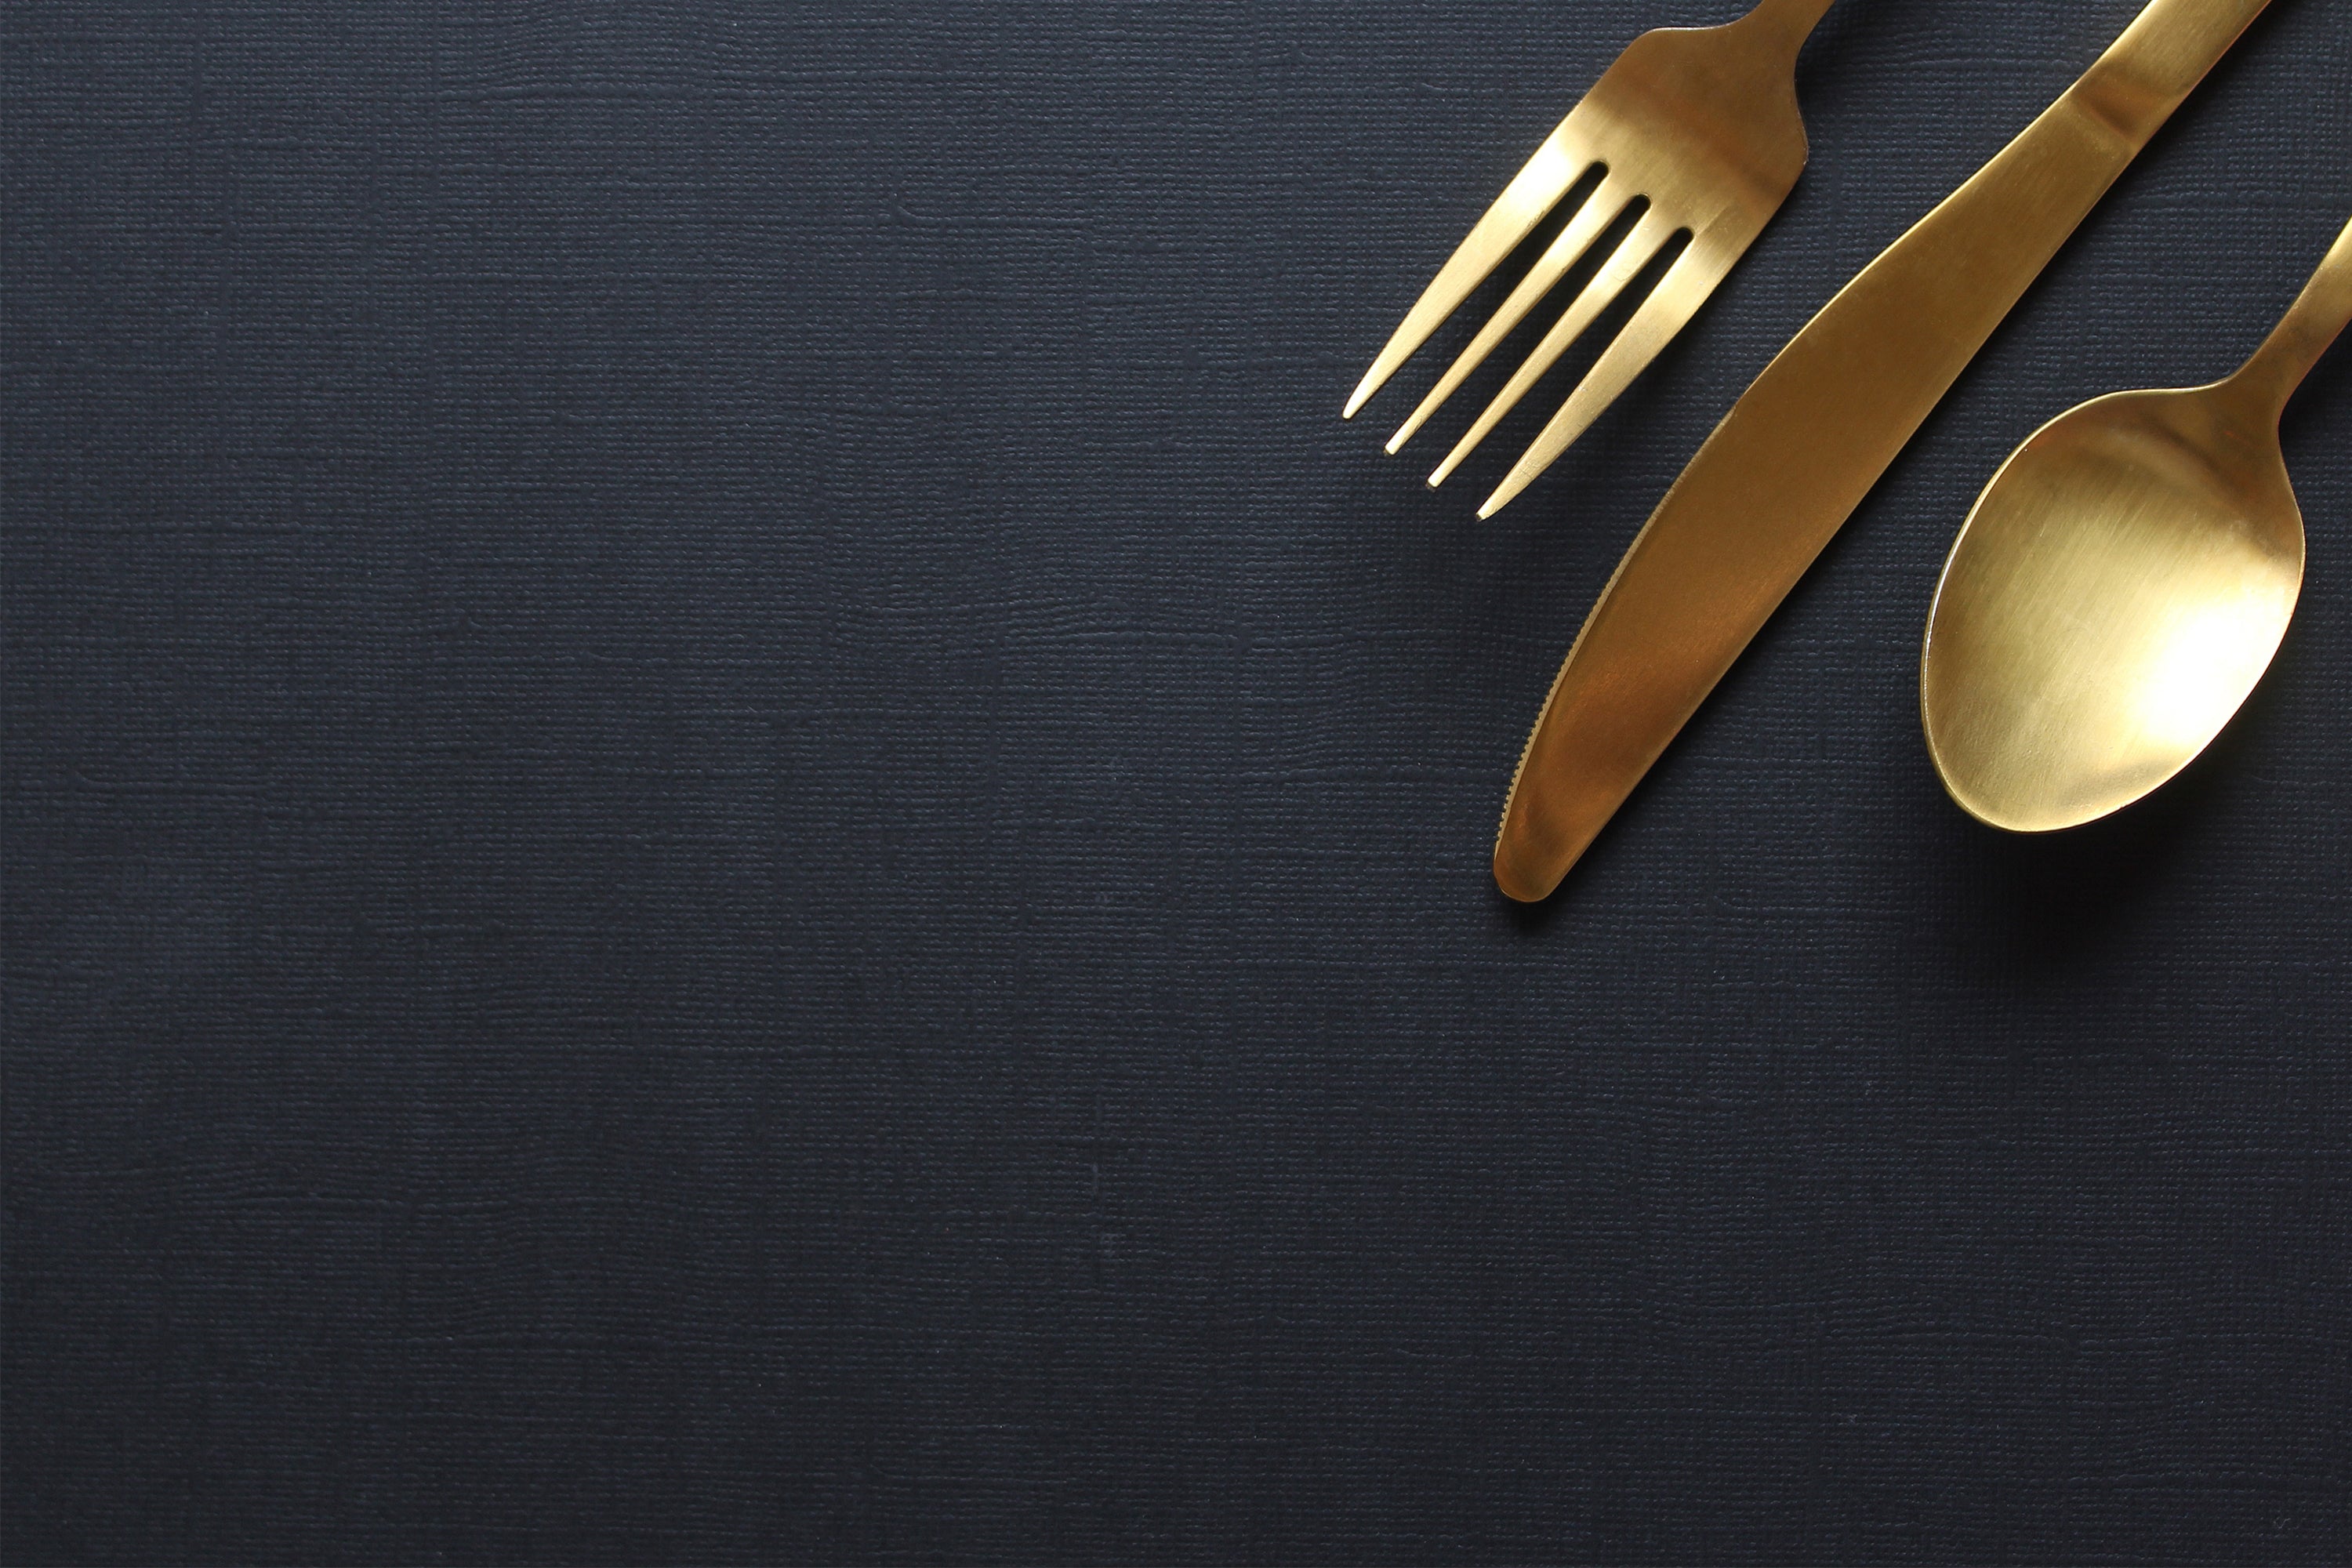 Een elegante goudkleurige bestekset, bestaande uit een vork, mes en lepel, netjes gerangschikt op een donkerblauwe, textielachtige achtergrond.   2 / 2      Was this response better or worse?  Better  Worse  Same